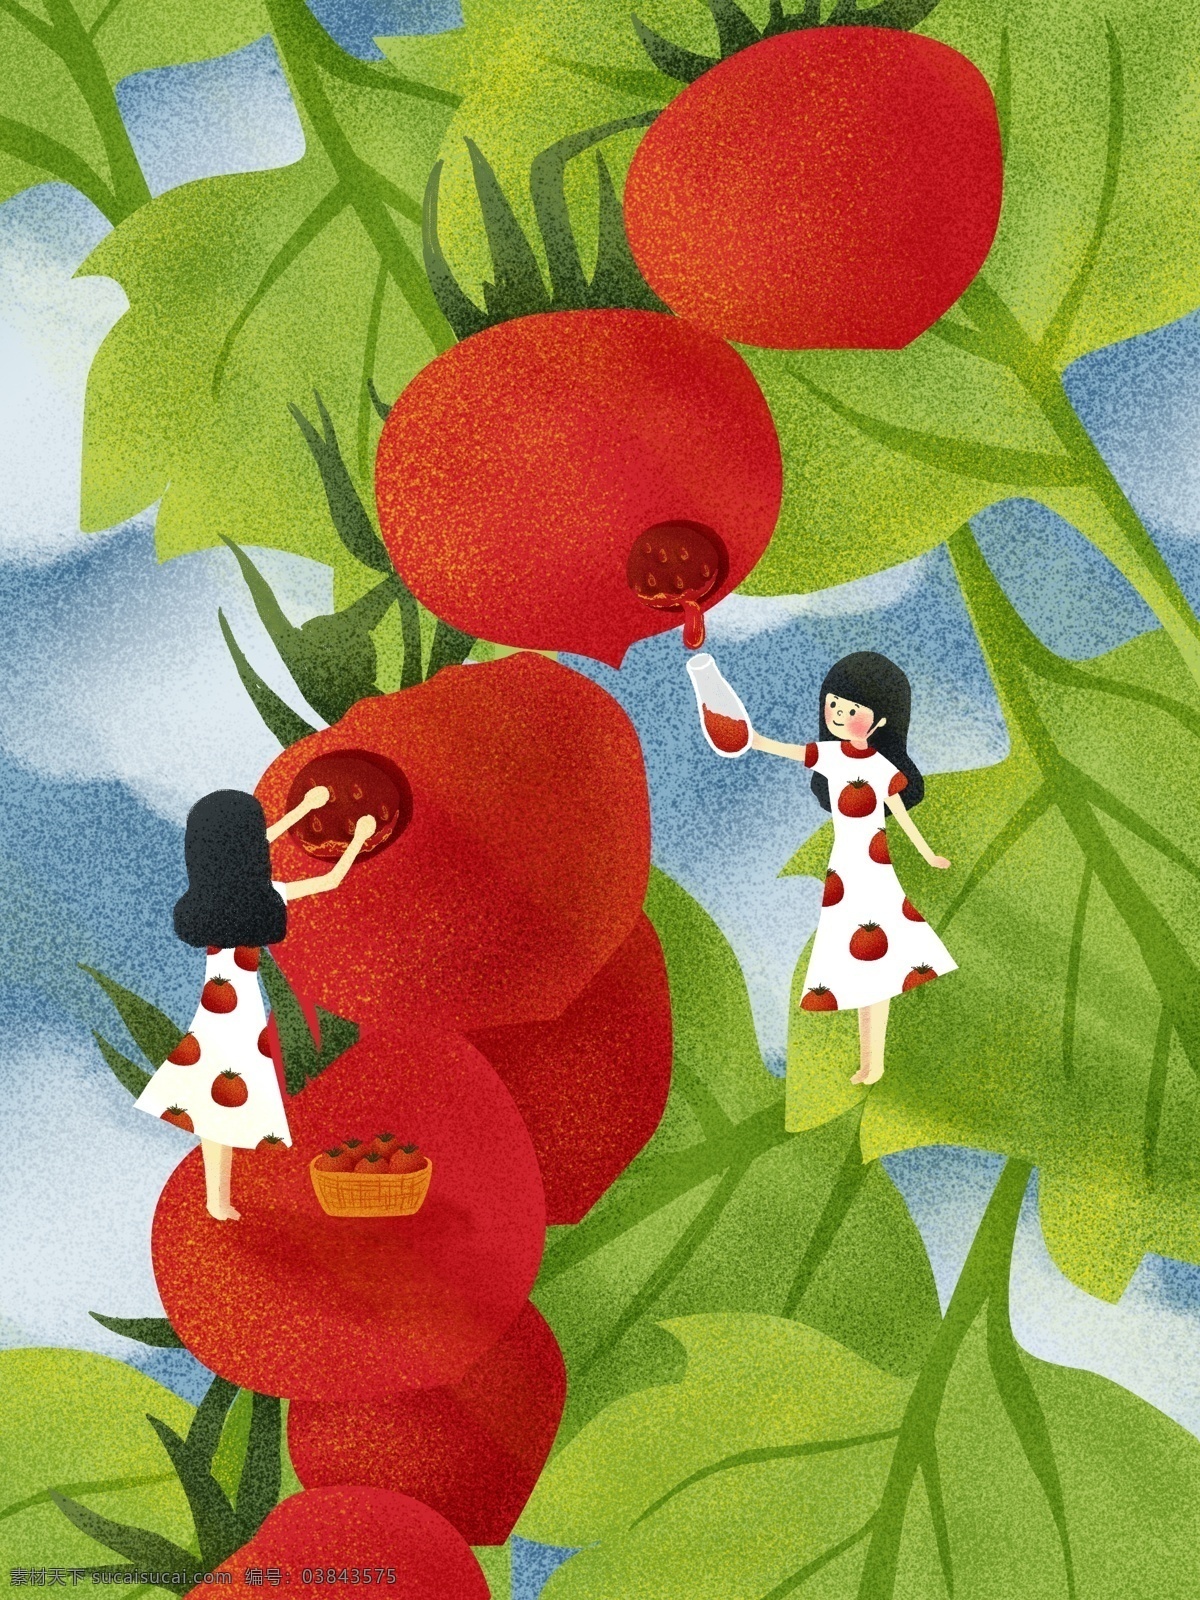 藤 上水 果 小 番茄 治愈 丰收 系 手绘 场景 插画 植物 树叶 手绘插画 果汁 小番茄 水果 治愈系 收获 果实 水果篮 西红柿